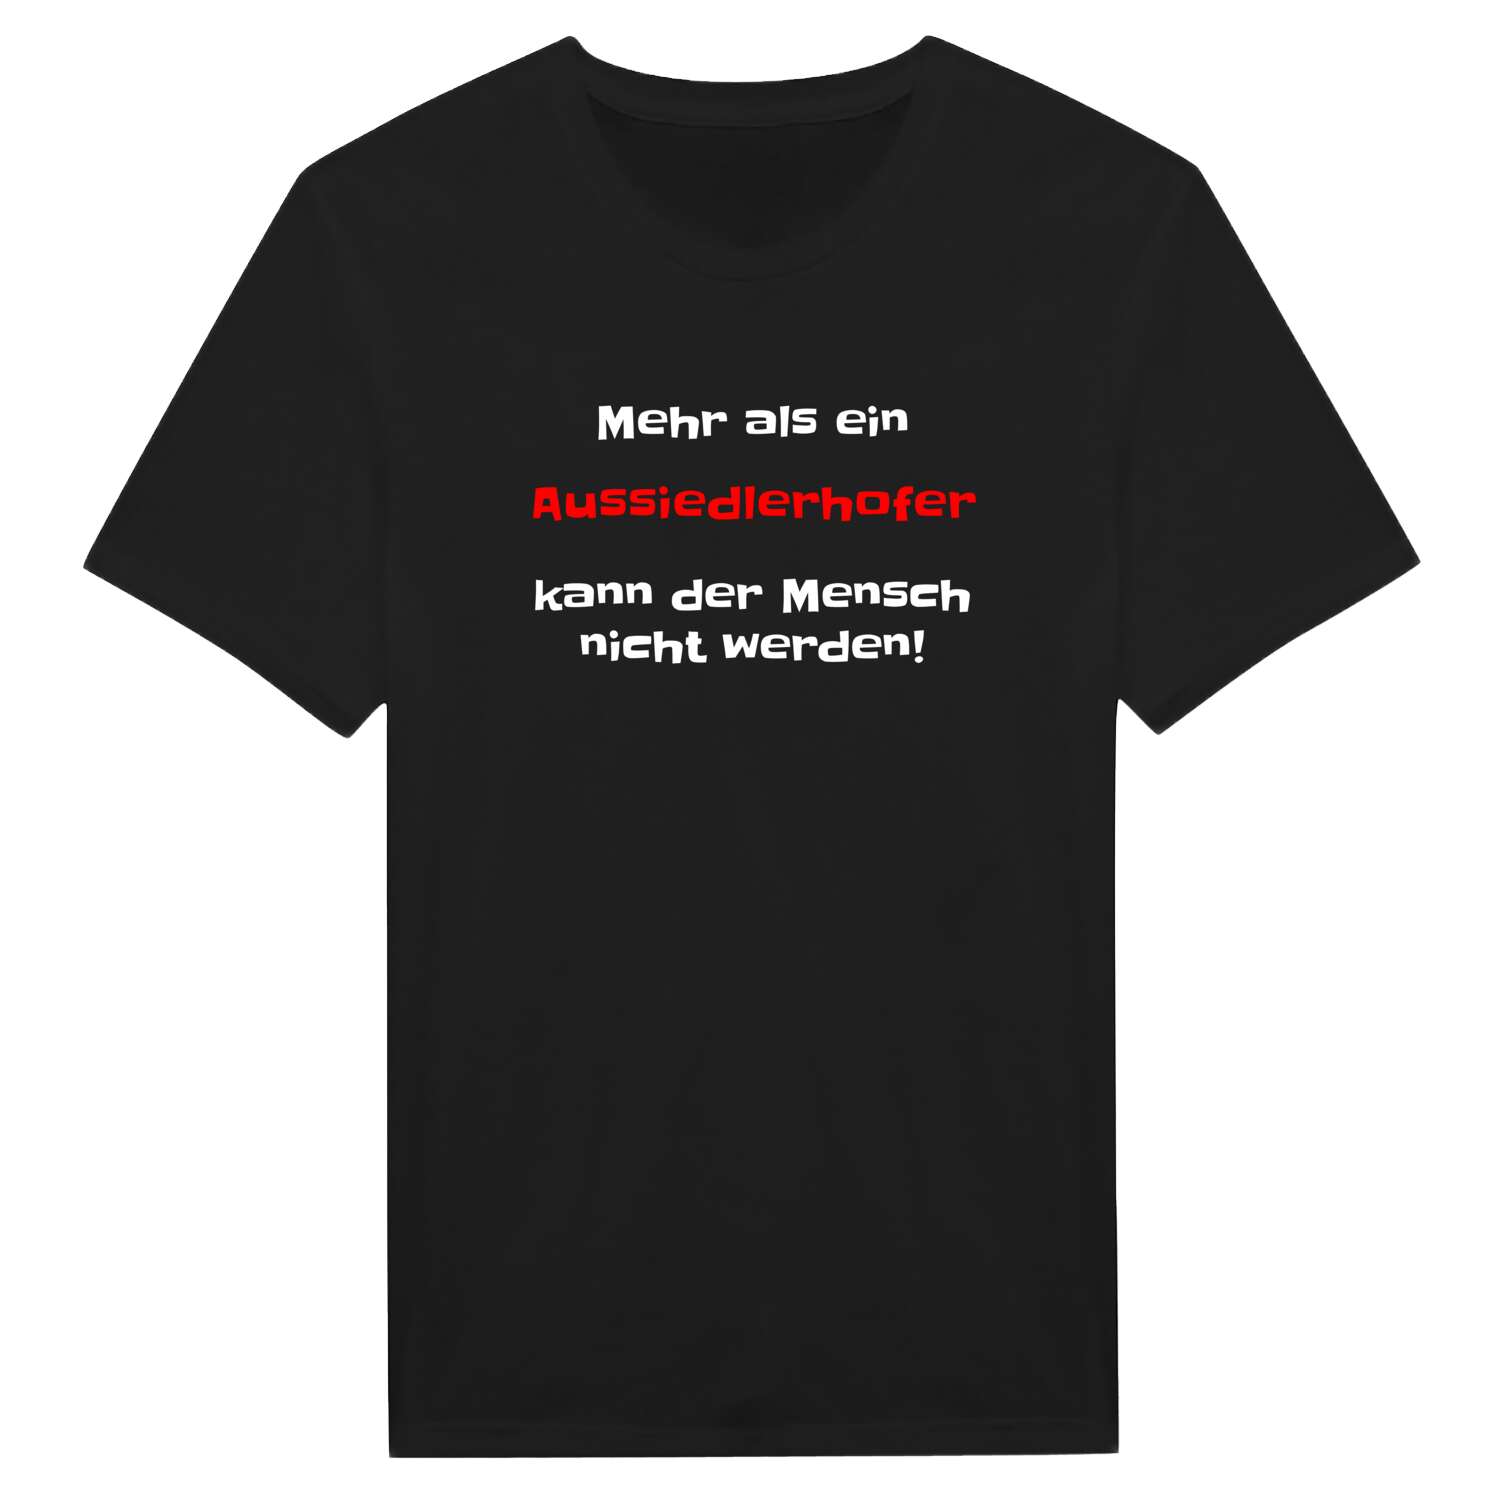 Aussiedlerhof T-Shirt »Mehr als ein«